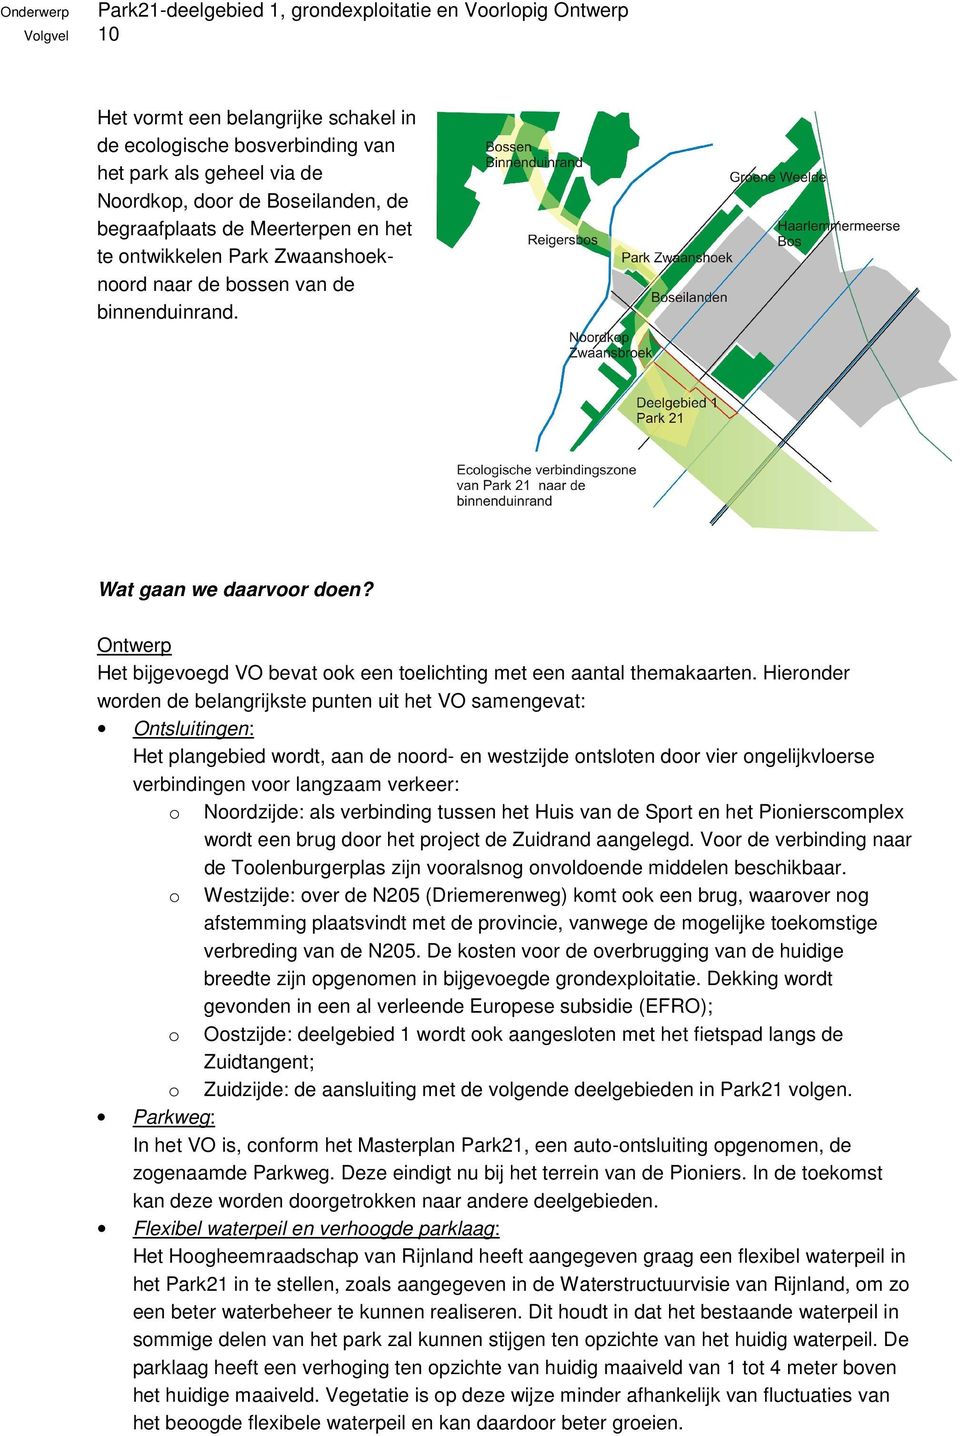 Hieronder worden de belangrijkste punten uit het VO samengevat: Ontsluitingen: Het plangebied wordt, aan de noord- en westzijde ontsloten door vier ongelijkvloerse verbindingen voor langzaam verkeer: